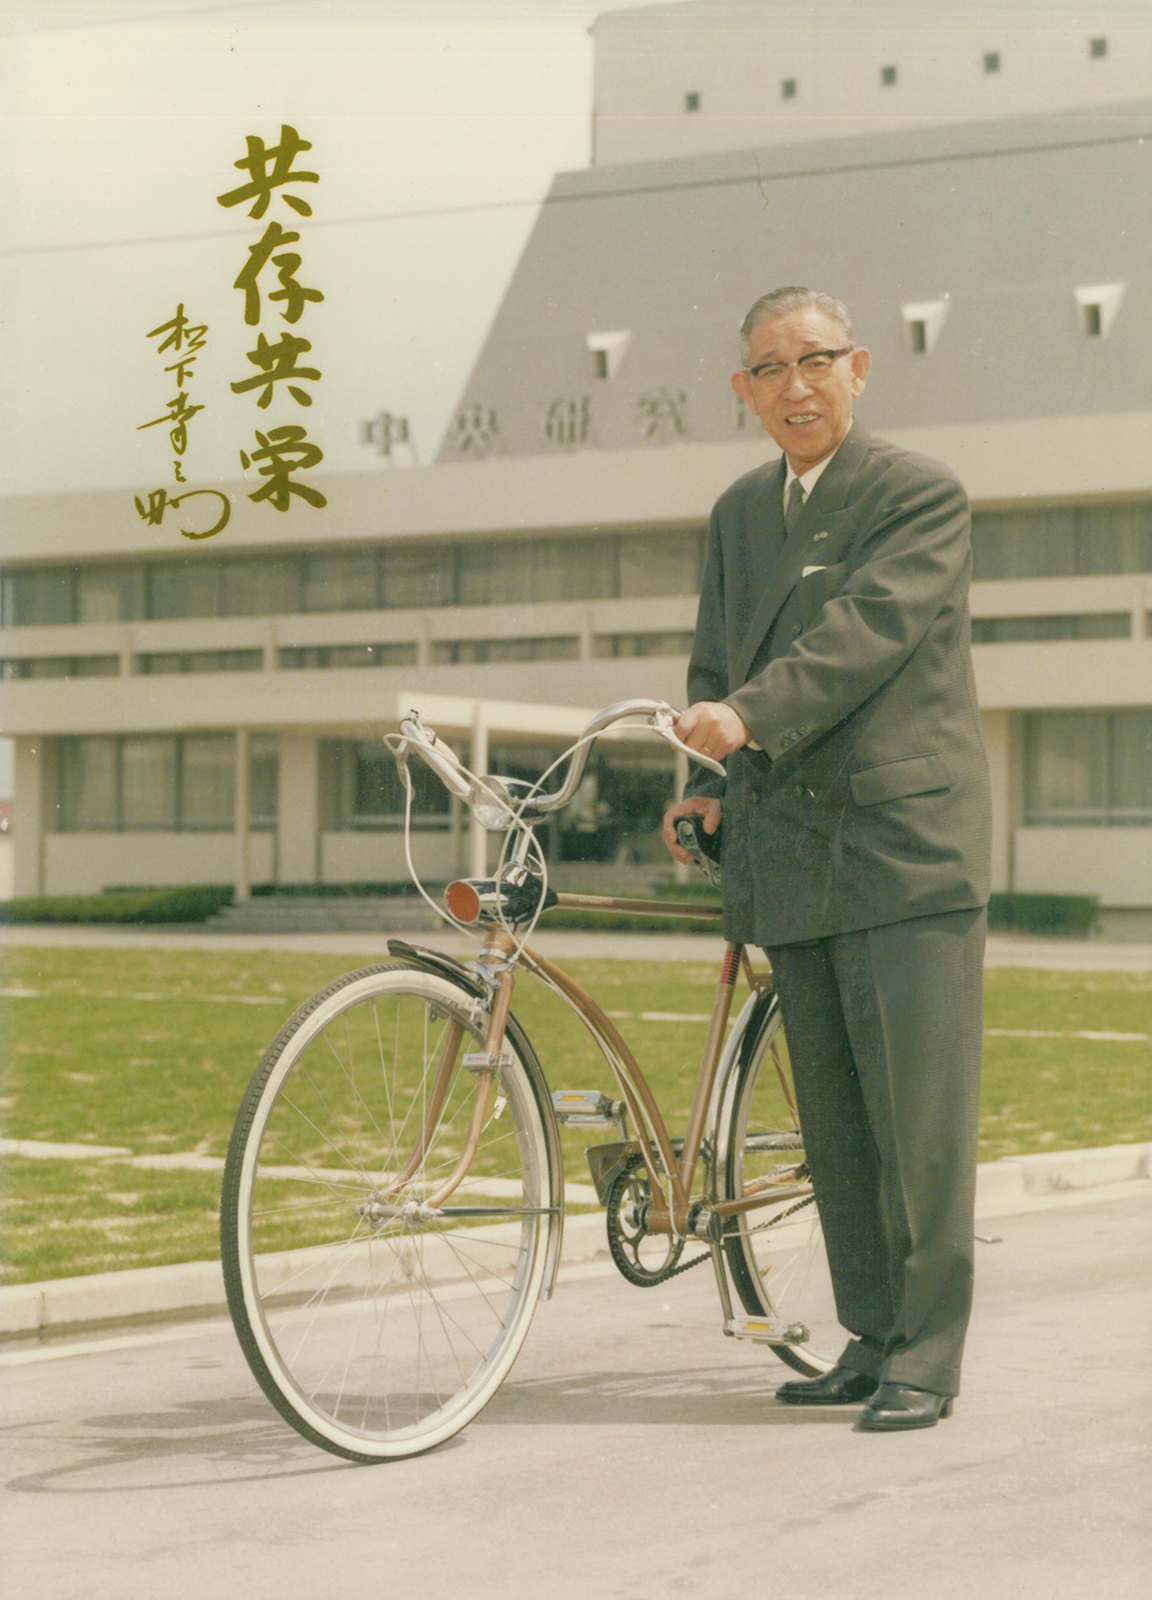 写真：1965年 自転車生産100万台の達成を記念して贈られた、松下電器産業（当時）製の自転車「ニューグランディ」と一緒に写る創業者 松下幸之助。